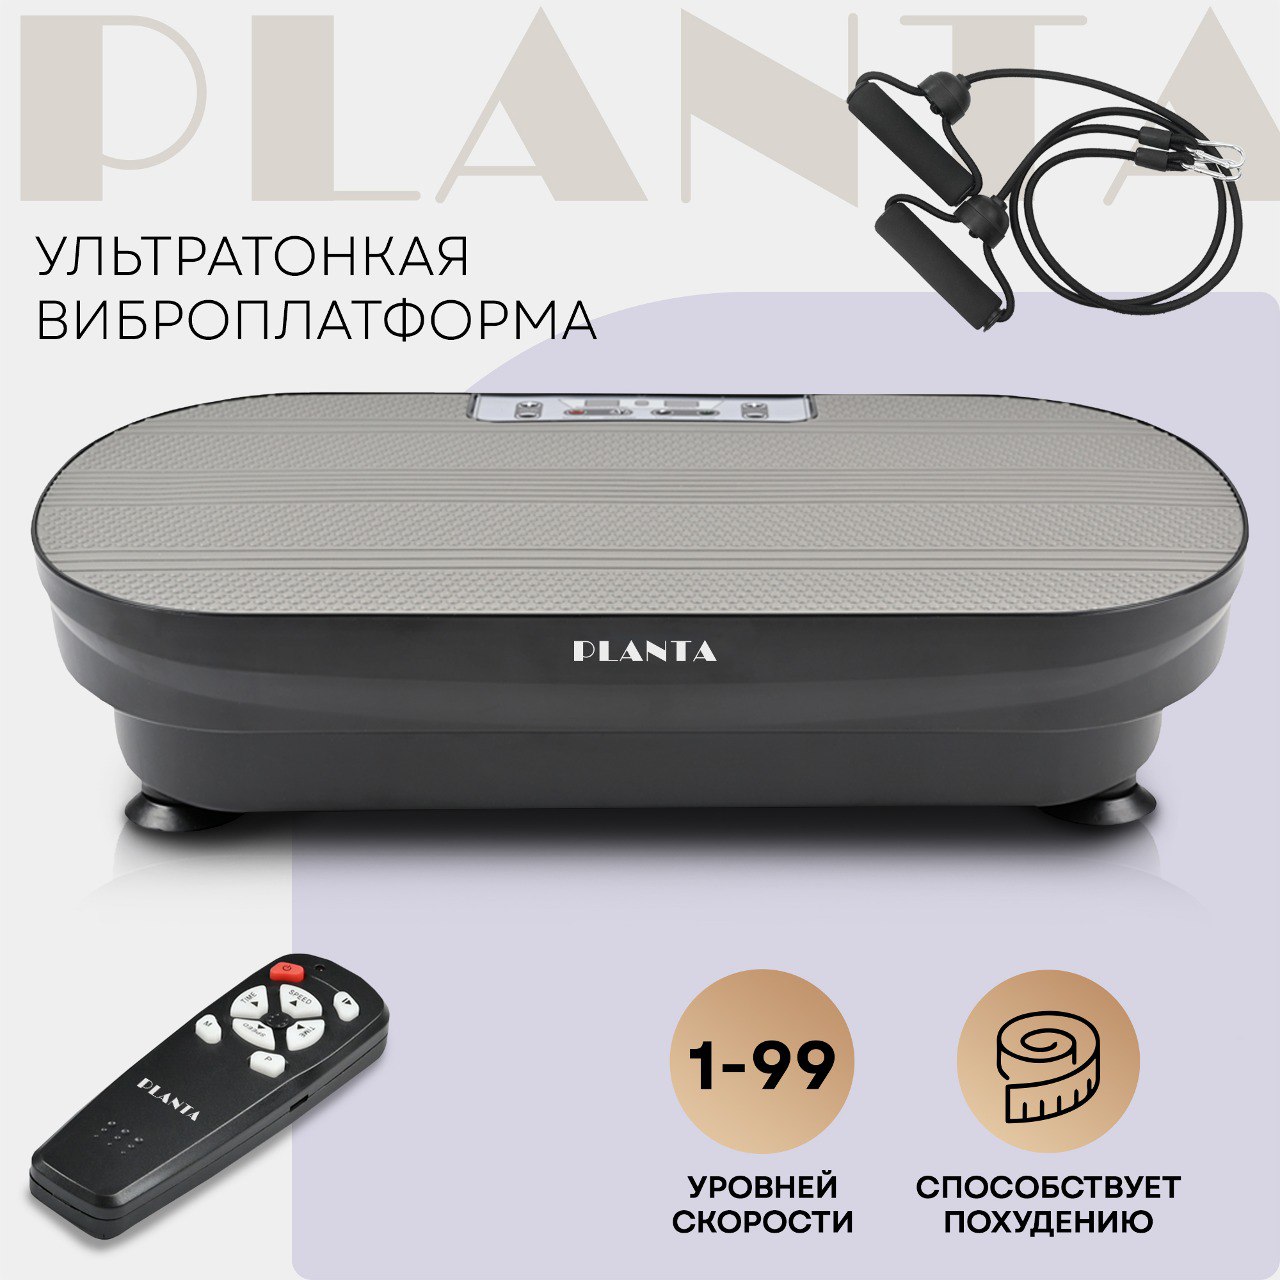 Ультратонкая виброплатформа Planta VP-02 Vibra Slim, 150 Вт, 99 скоростей, эспандеры